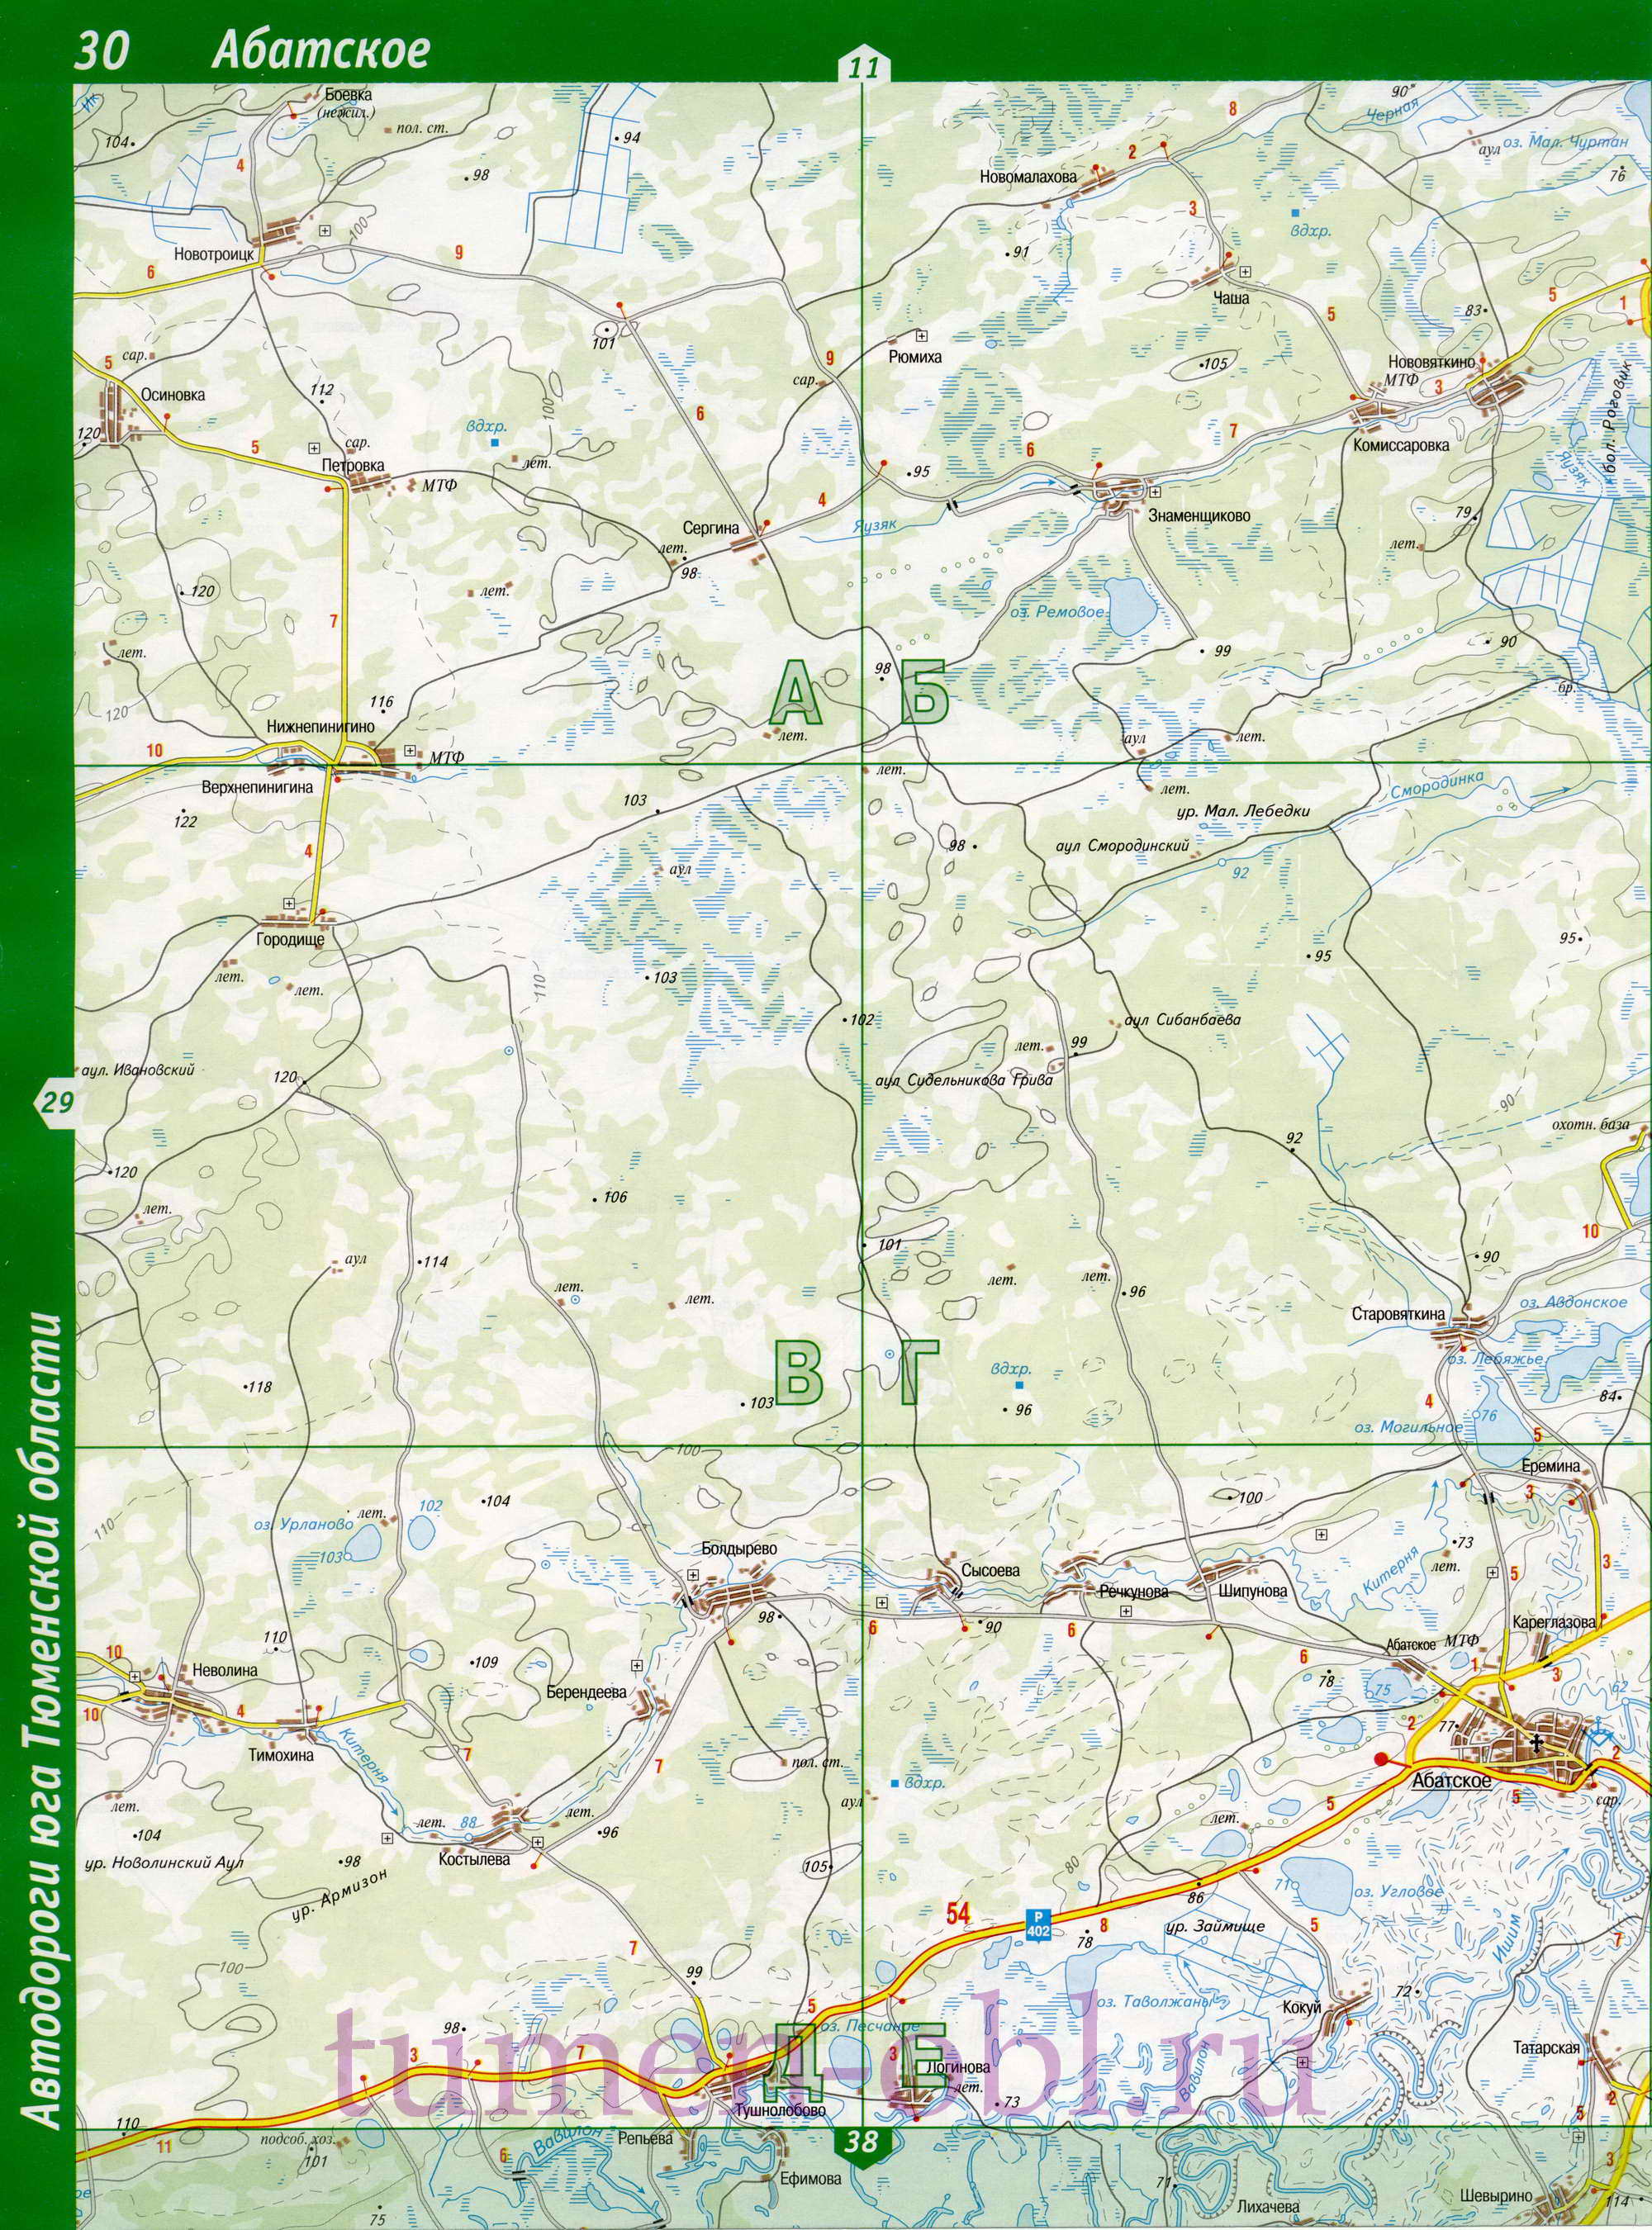 Карта Ишимский район Тюменской области. Подробная крупномасштабная карта Ишимского района, C0 - 